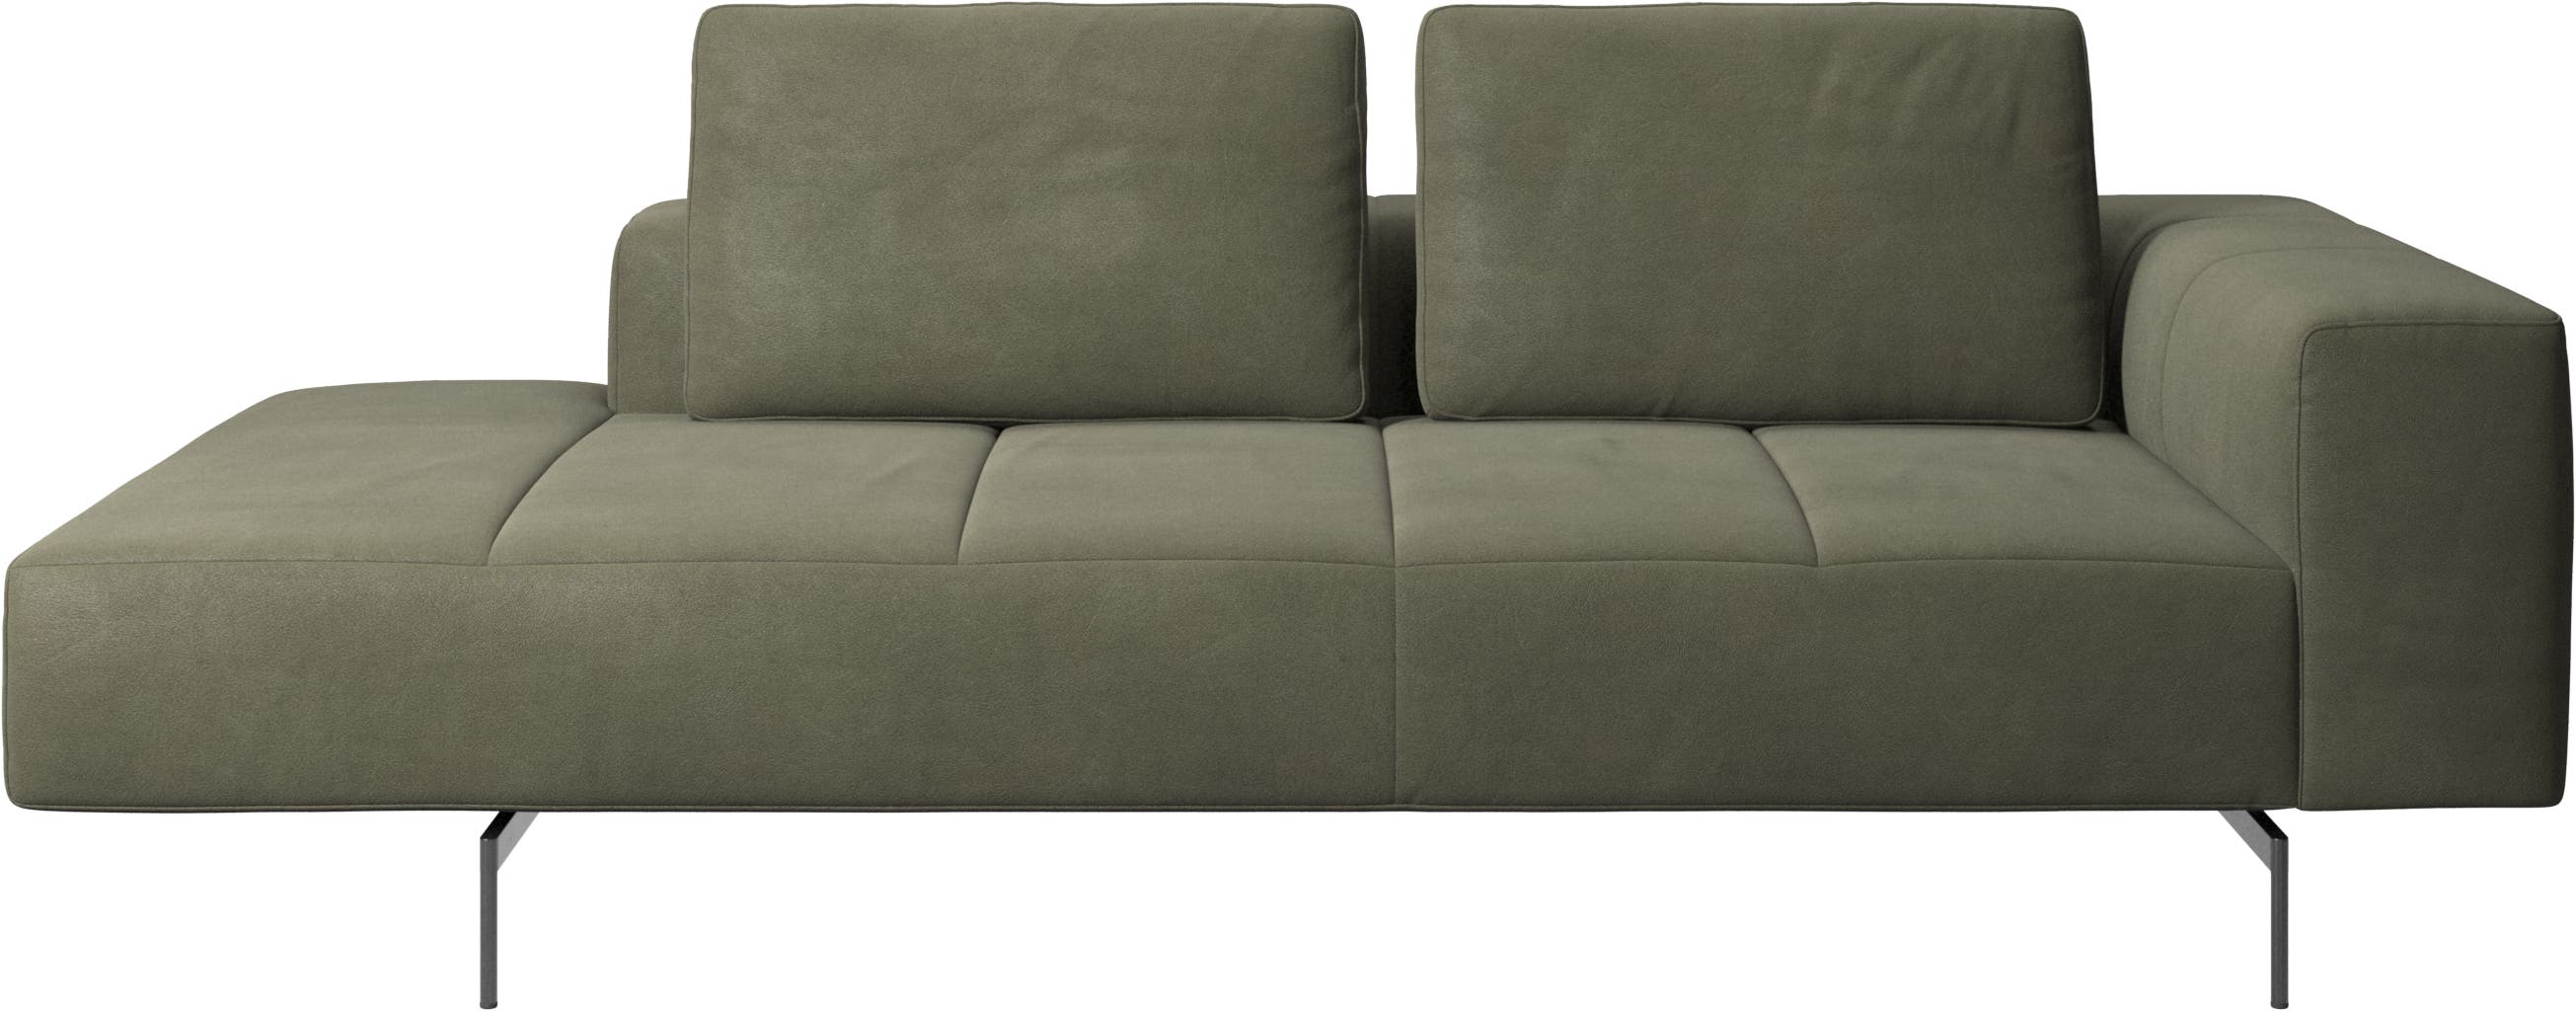 Amsterdam módulo de descanso para sofá, apoio de braço á direita, aberto á esquerda